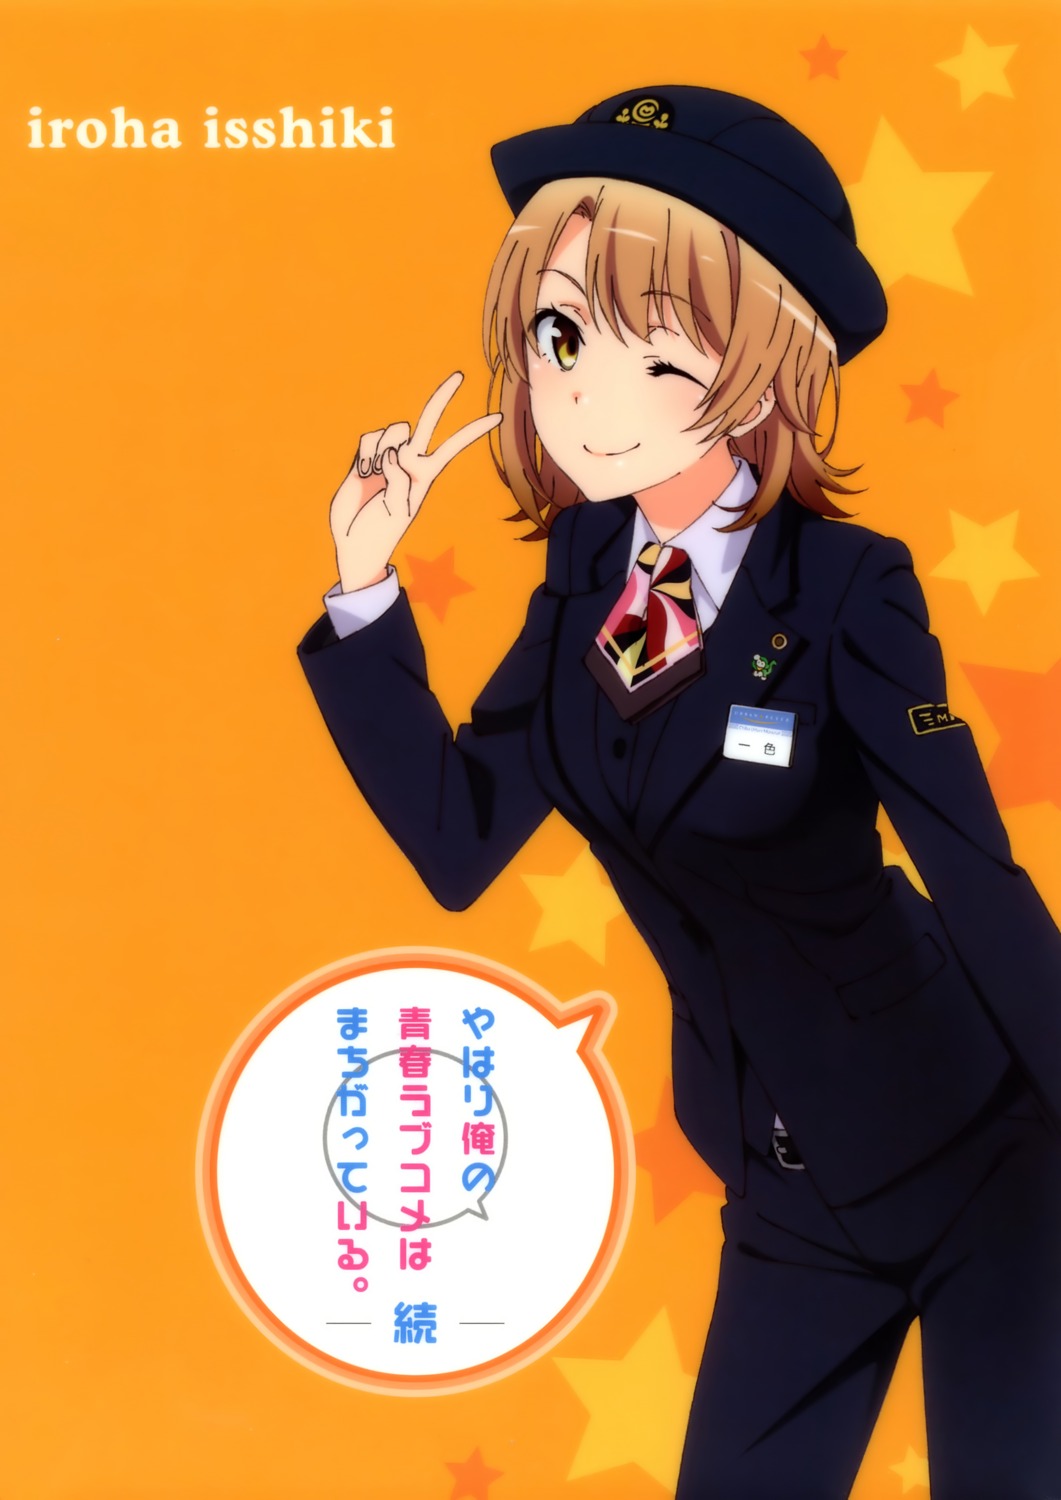 isshiki_iroha tagme uniform yahari_ore_no_seishun_lovecome_wa_machigatteiru.